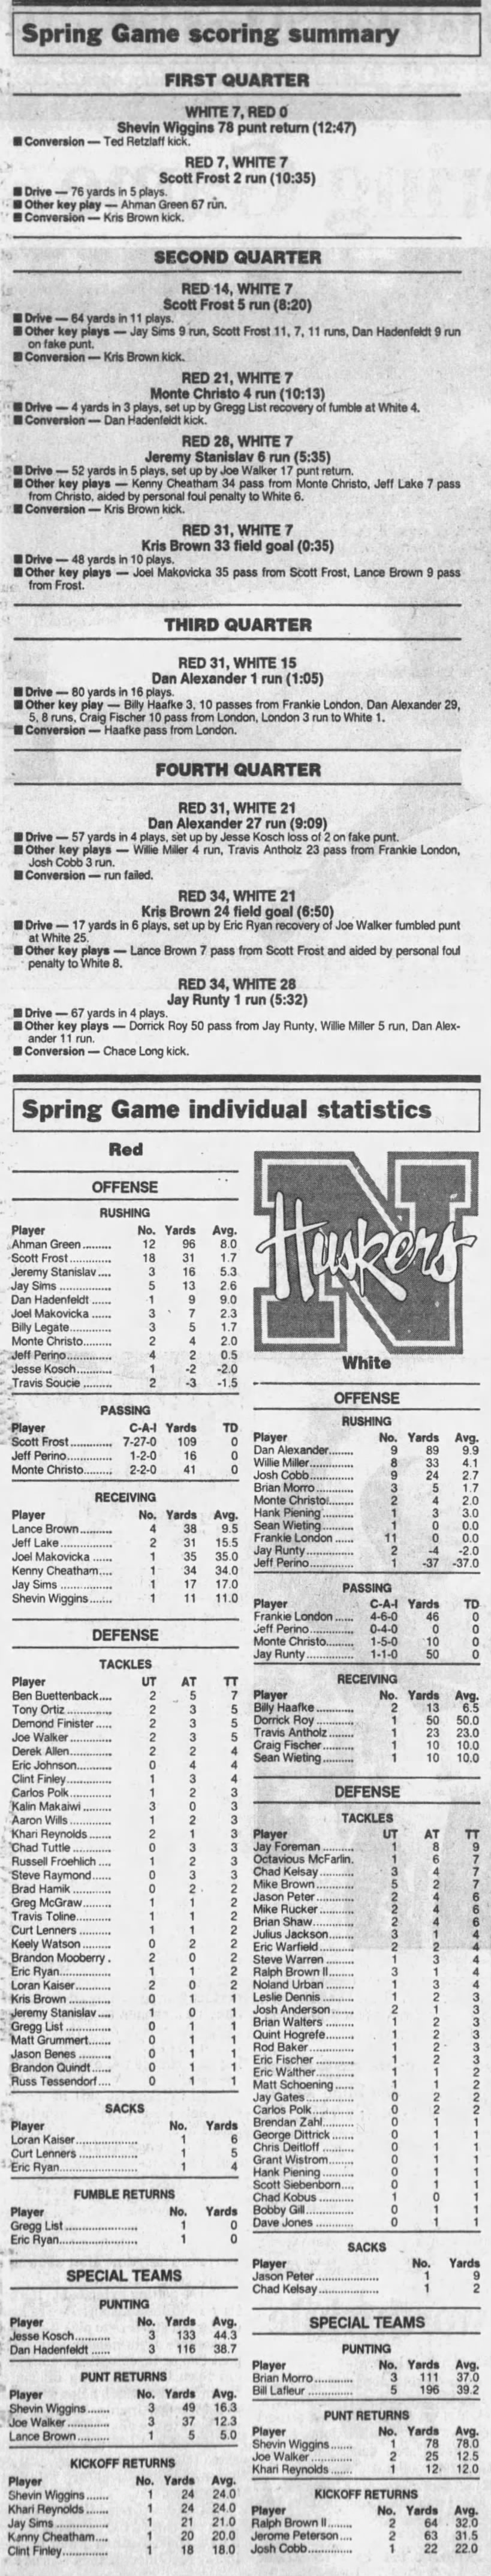 1997 Nebraska spring game stats